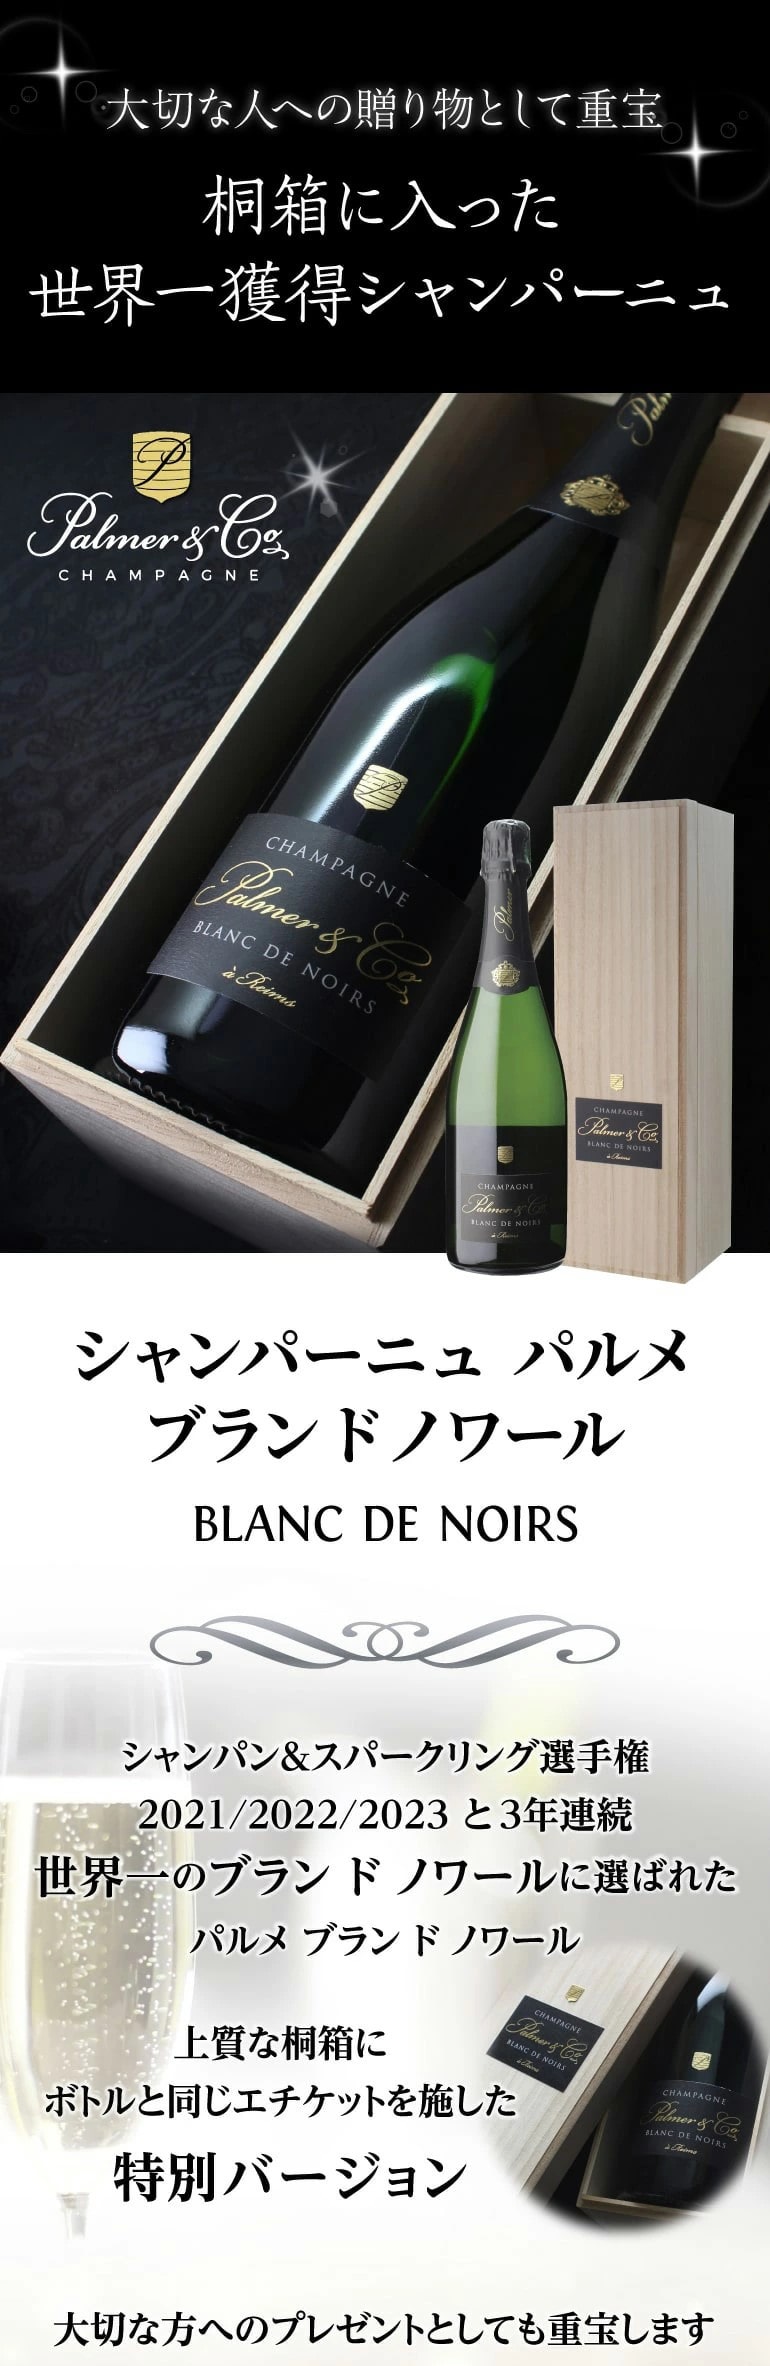 シャンパン パルメ ブラン ド ノワール 正規品 750ml ヴァレ ド ラ マルヌ